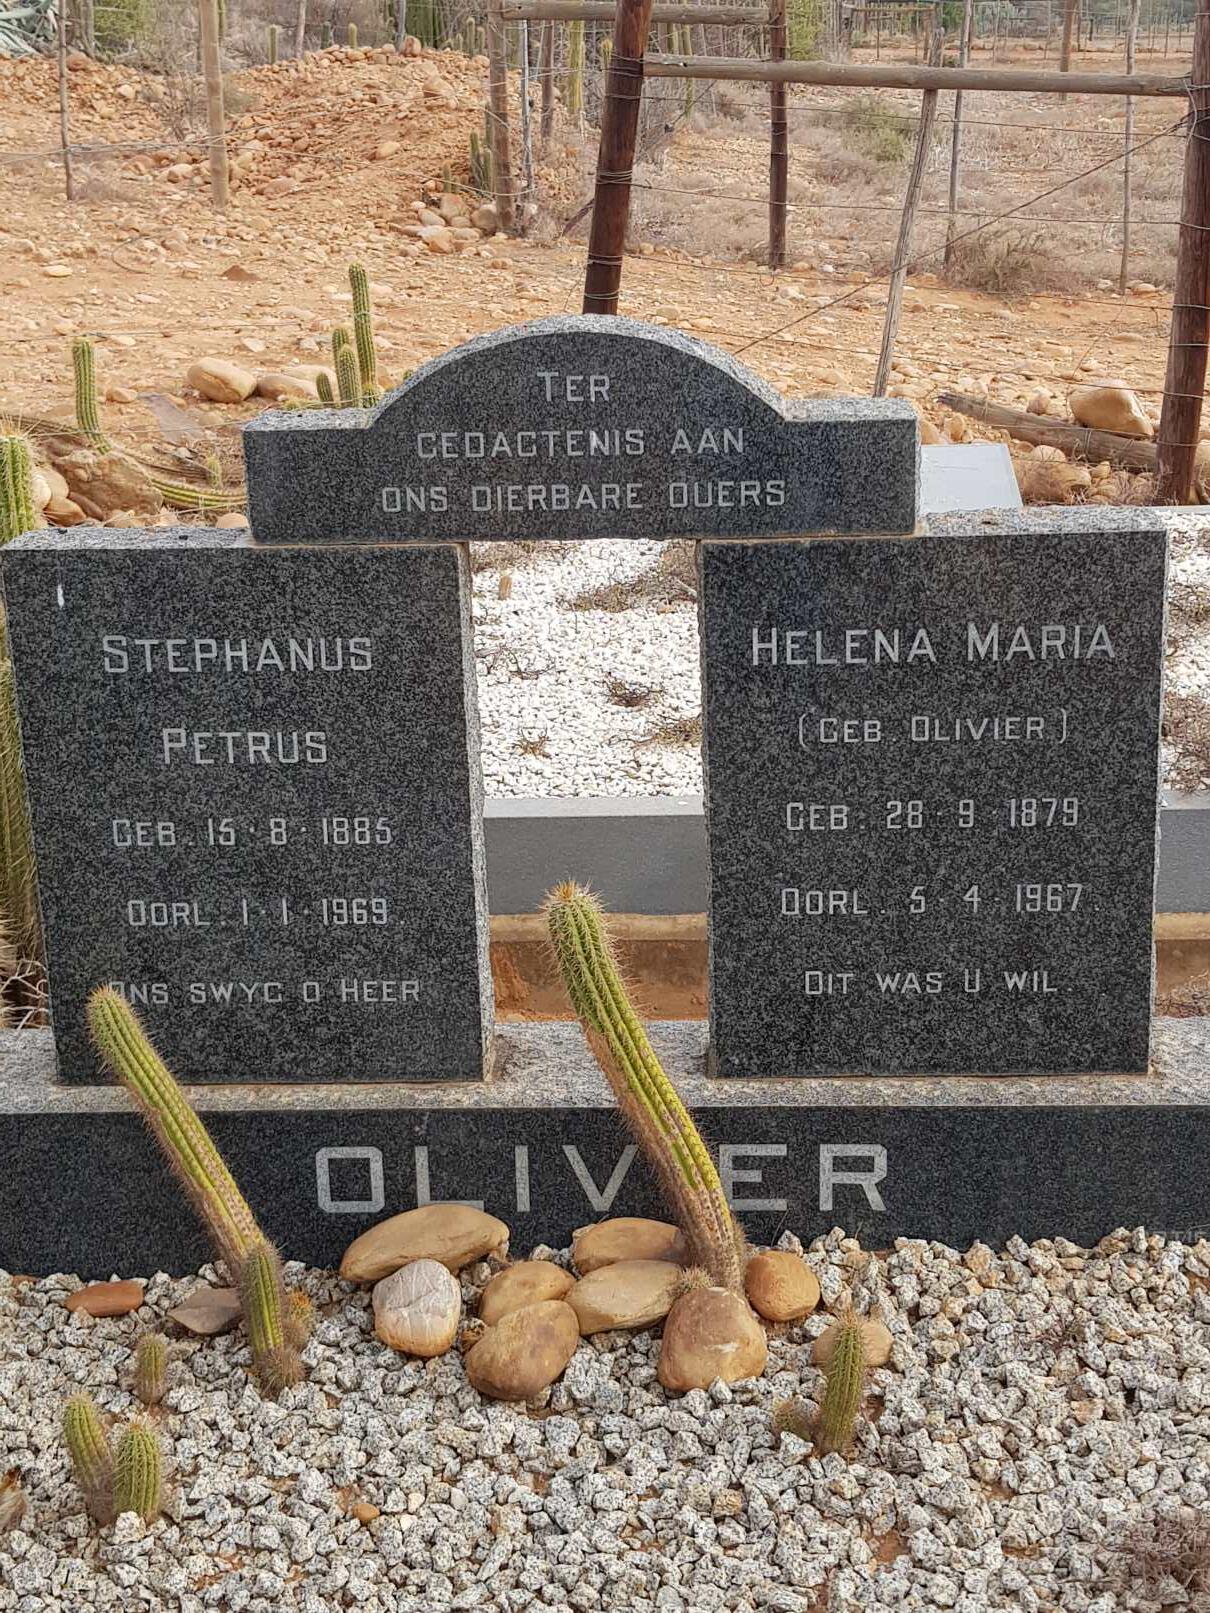 OLIVIER Stephanus Petrus 1885-1969 & Helena Maria OLIVIER 1879-1967